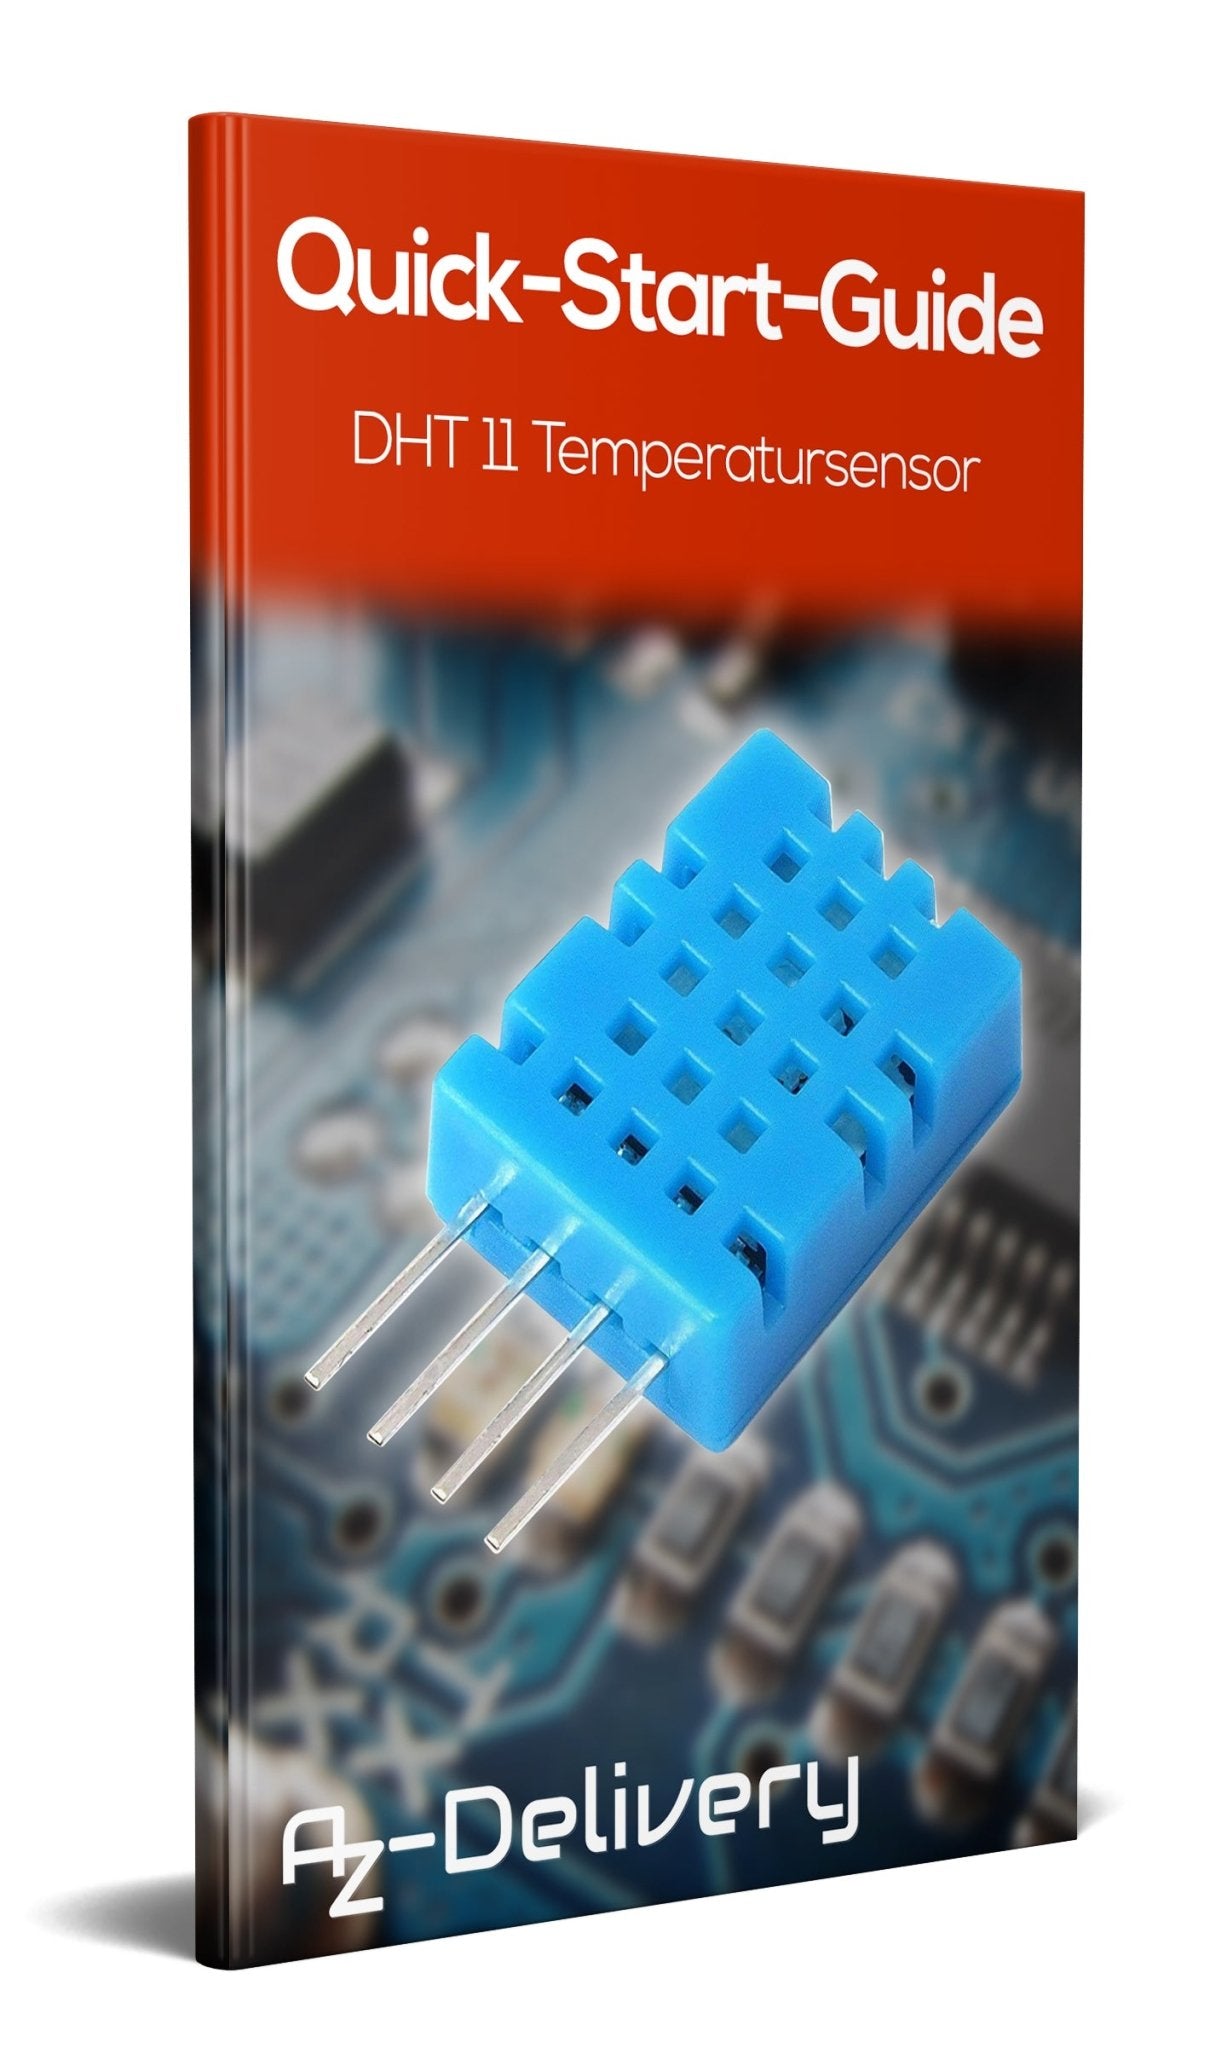 DHT11 Temperature-Humidity Sensor